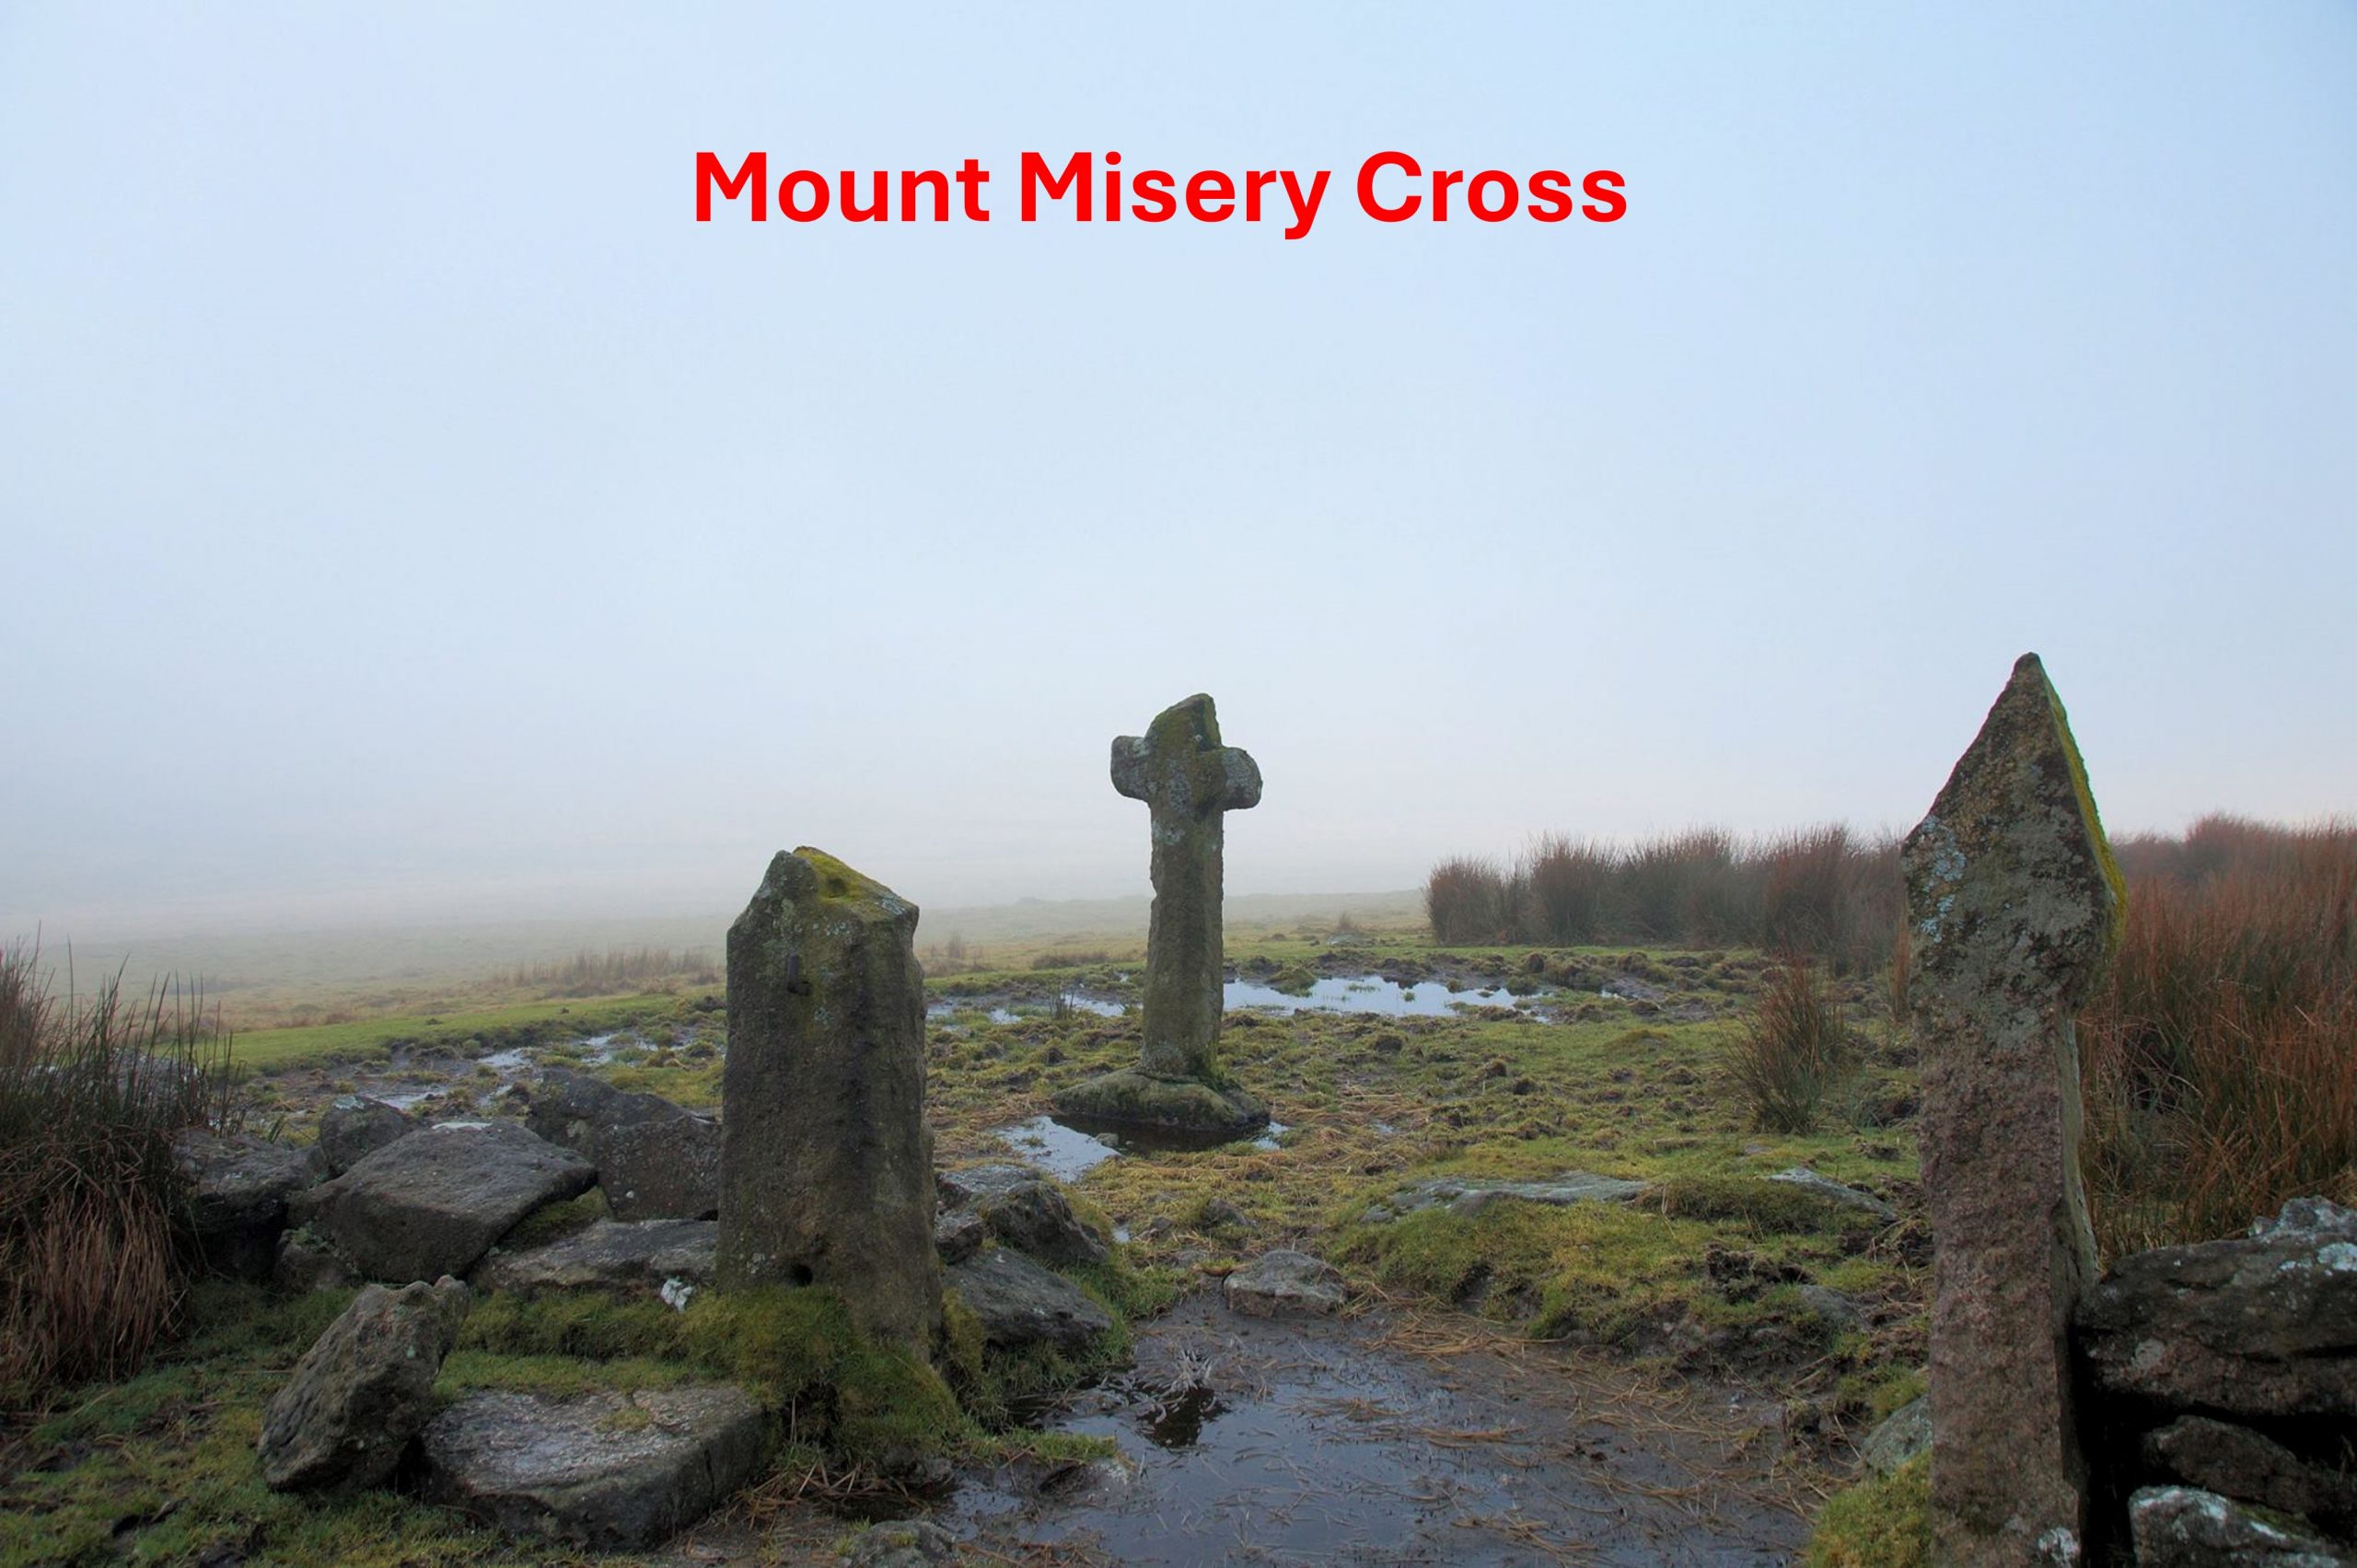 7. Mount Misery Cross